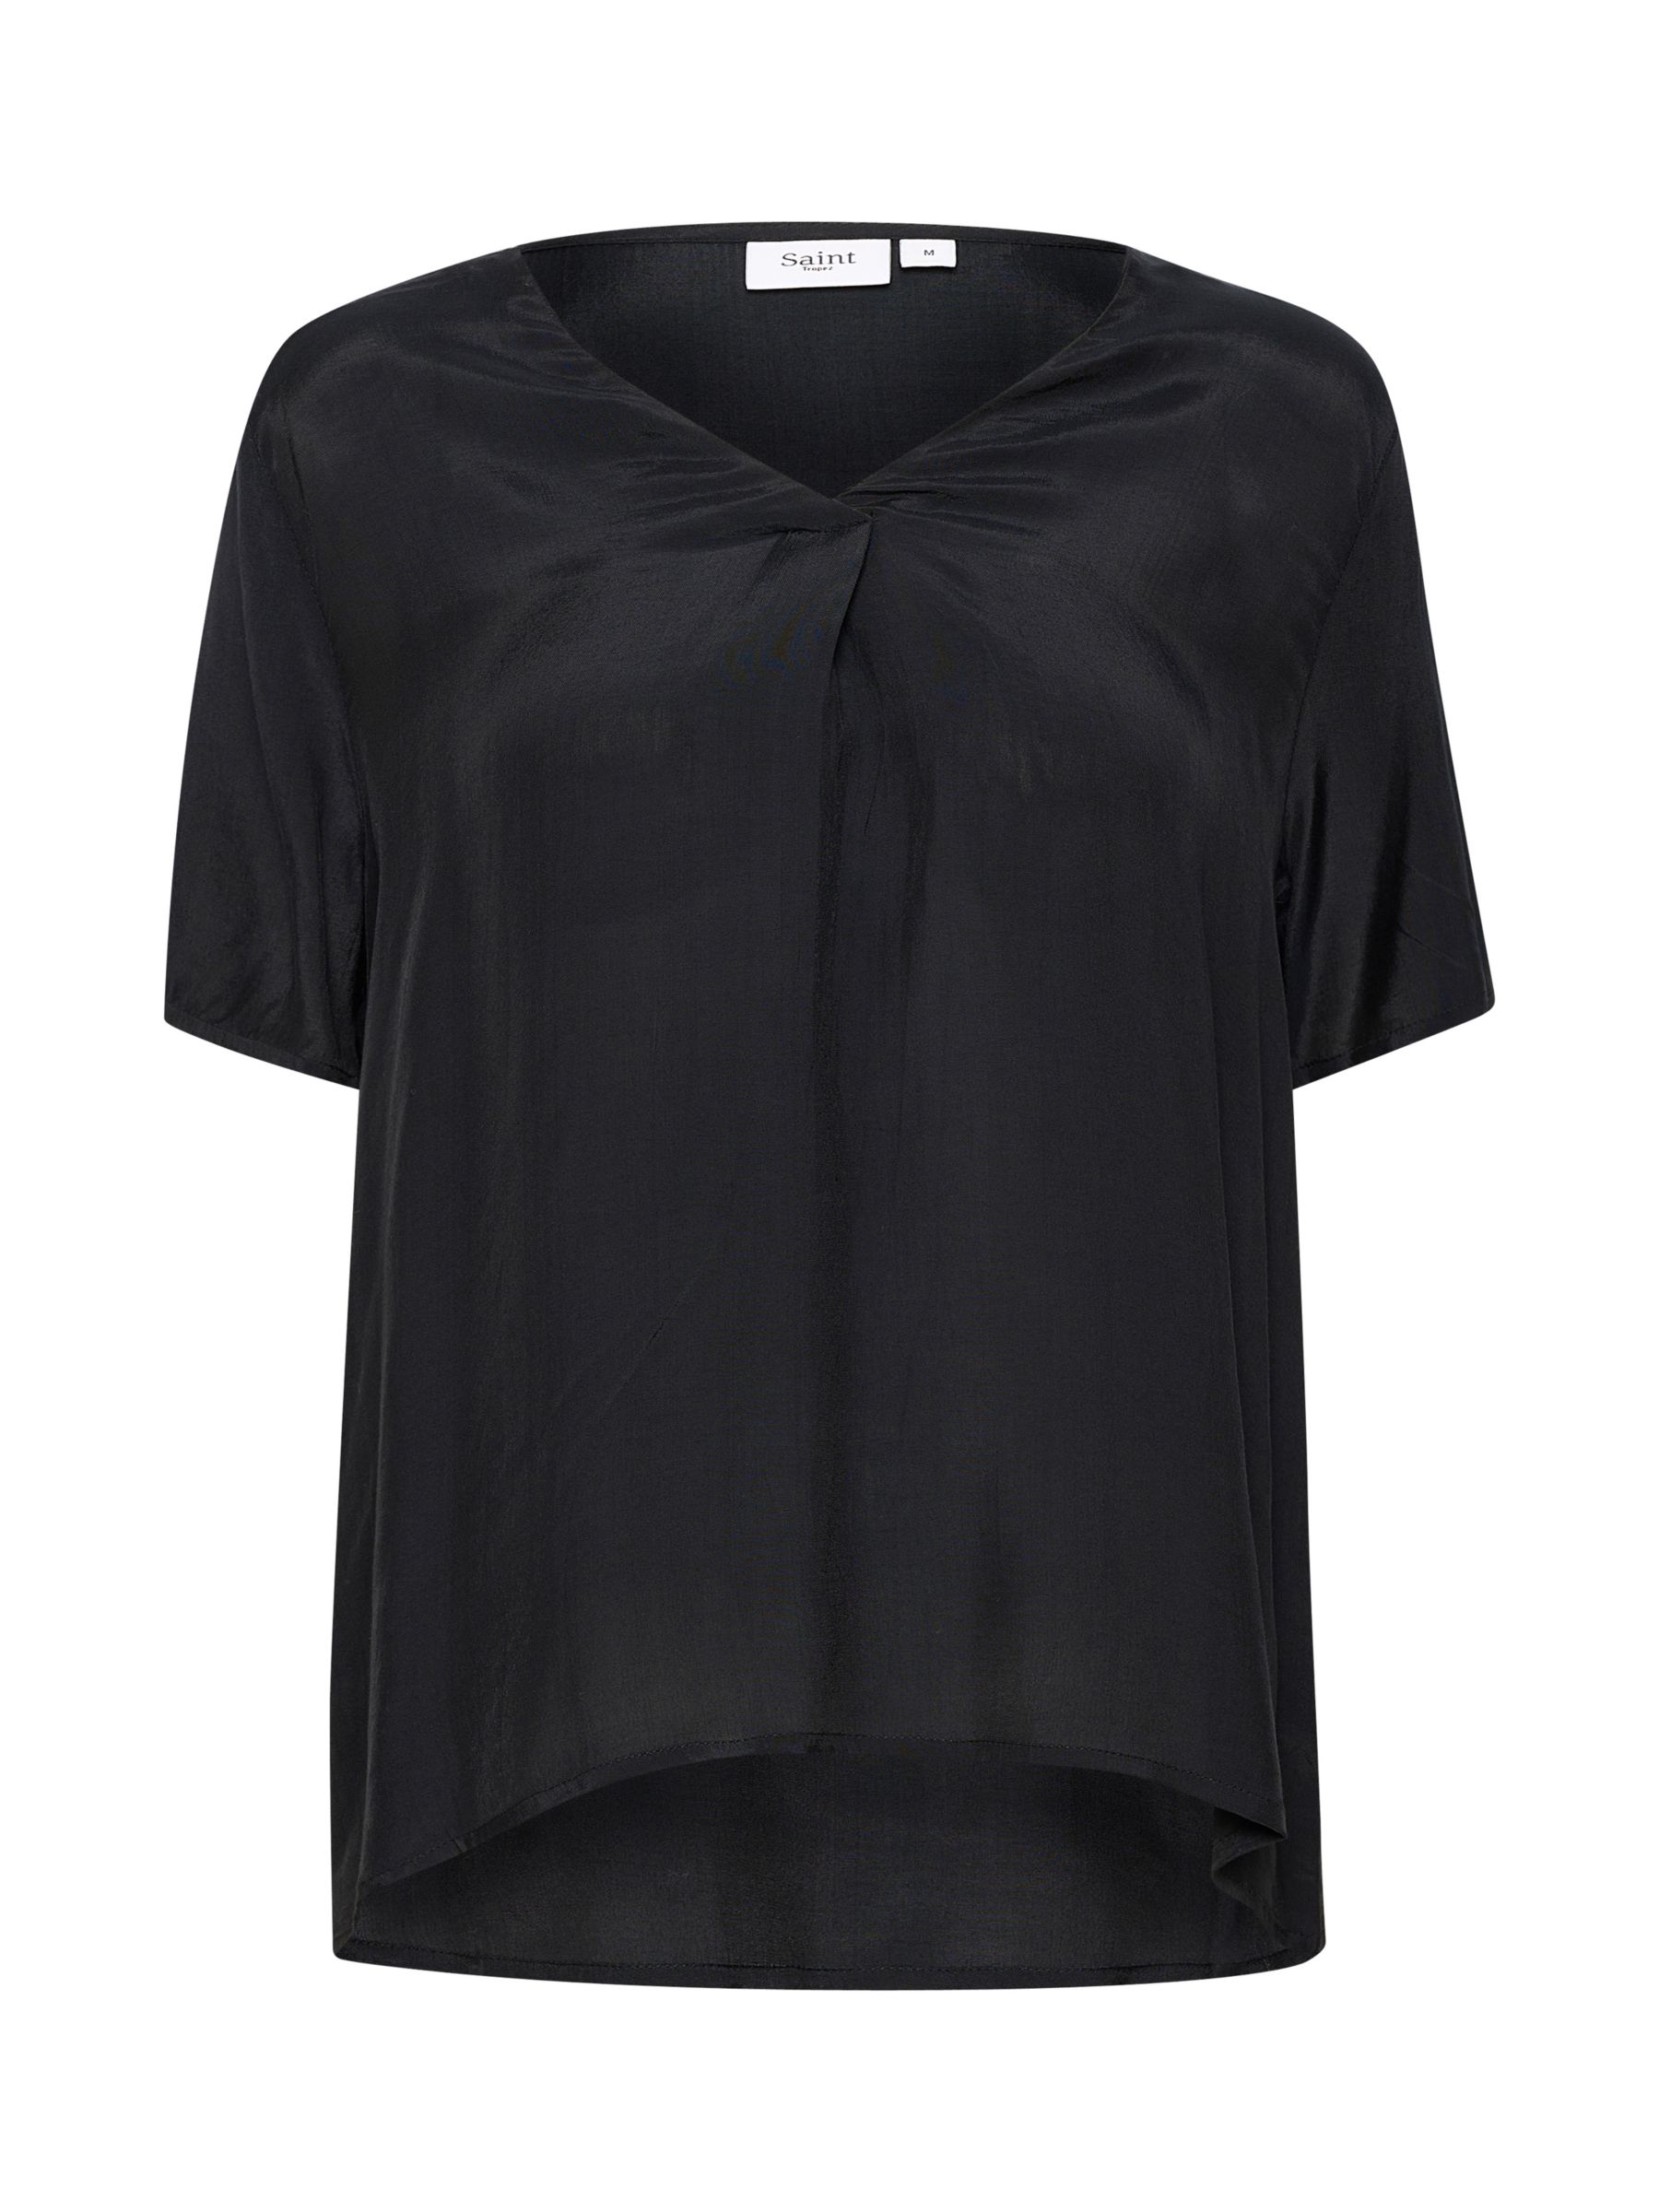 Блузка Aida Ecovero Saint Tropez, черный блузка с рисунком v образным вырезом и короткими рукавами xs бежевый